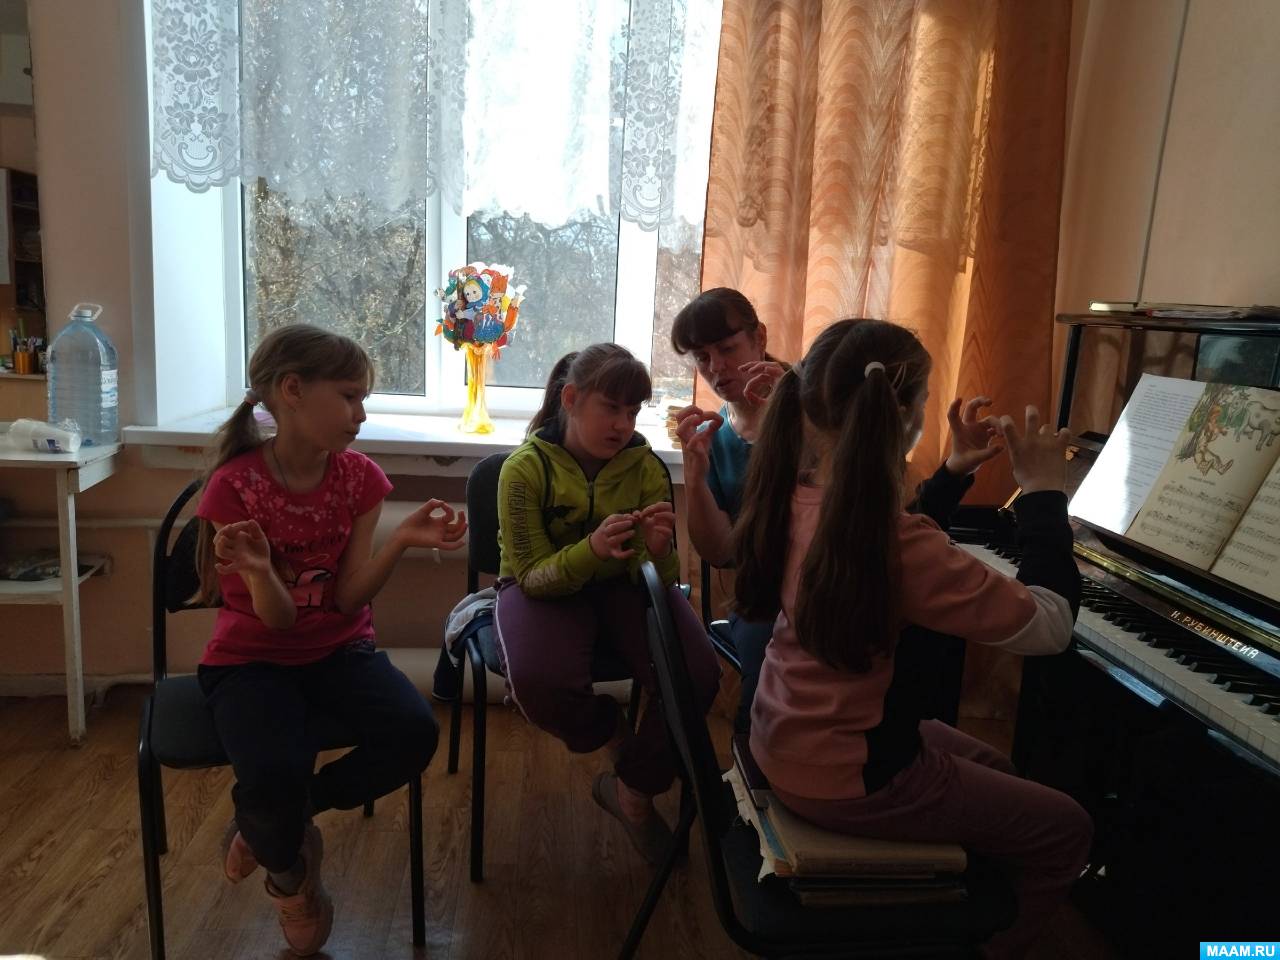 Комплексное развитие детей в начальный период обучения игре на фортепиано